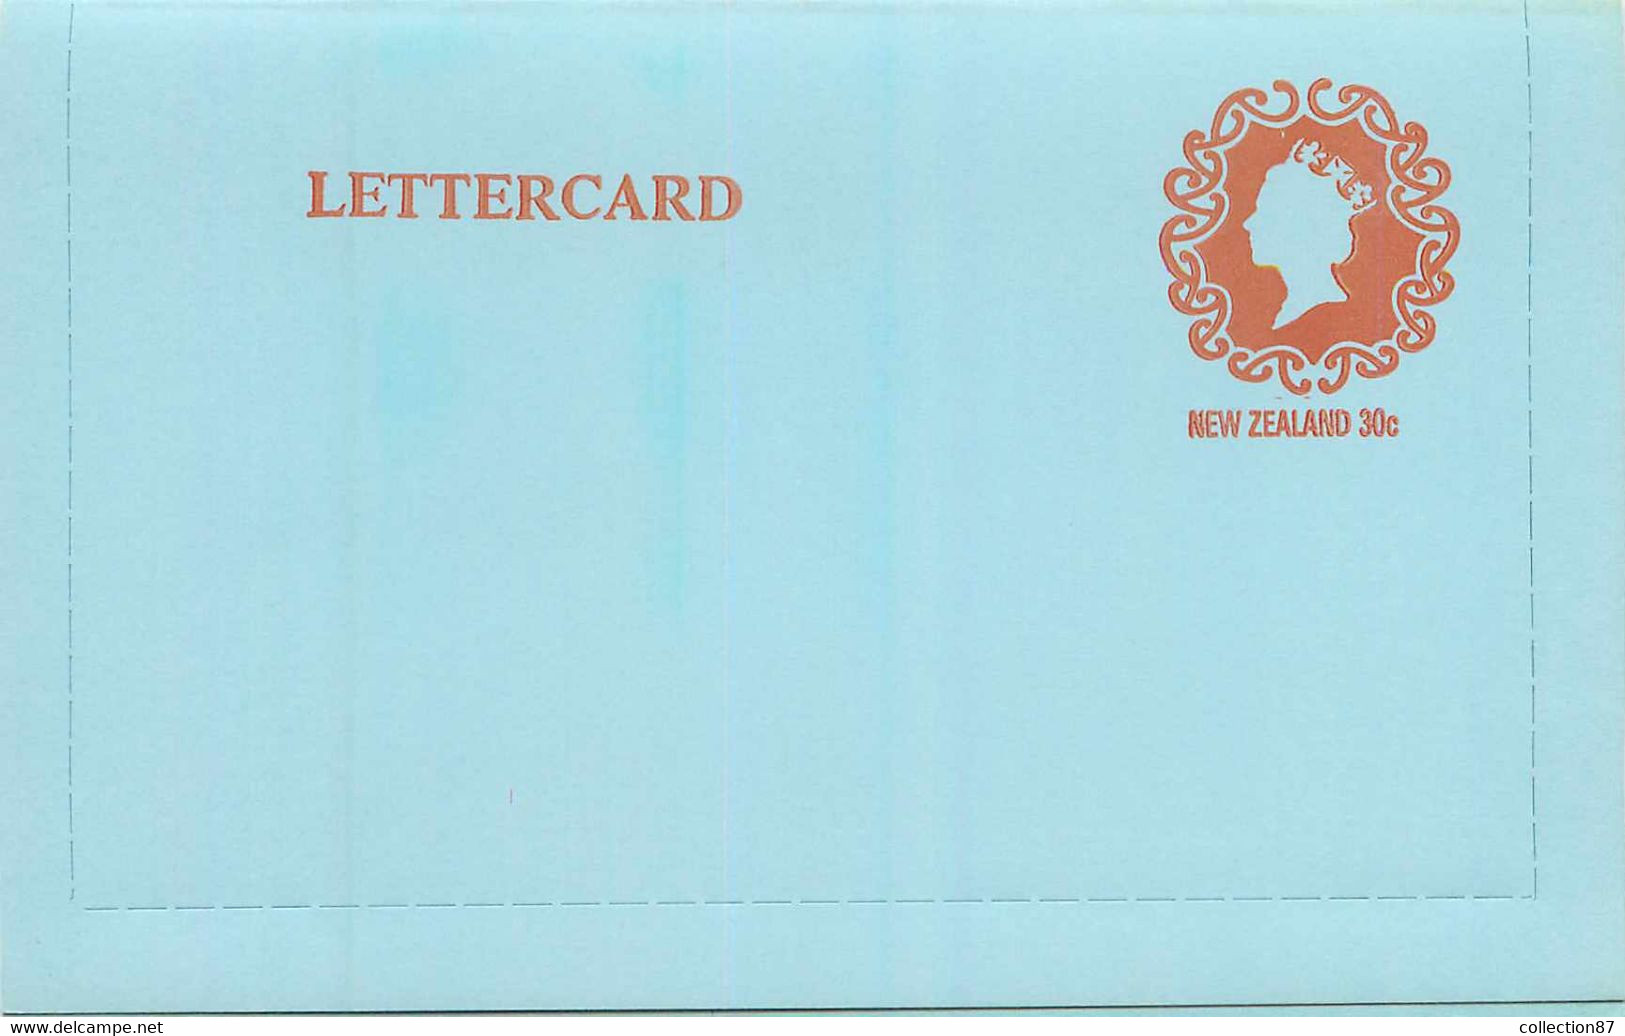 NEW ZEALAND - LETTERCARD 30c Postage Paid < ENTIER POSTAL NOUVELLE ZELANDE 30 Cent - QUEEN ELISABETH - Ganzsachen